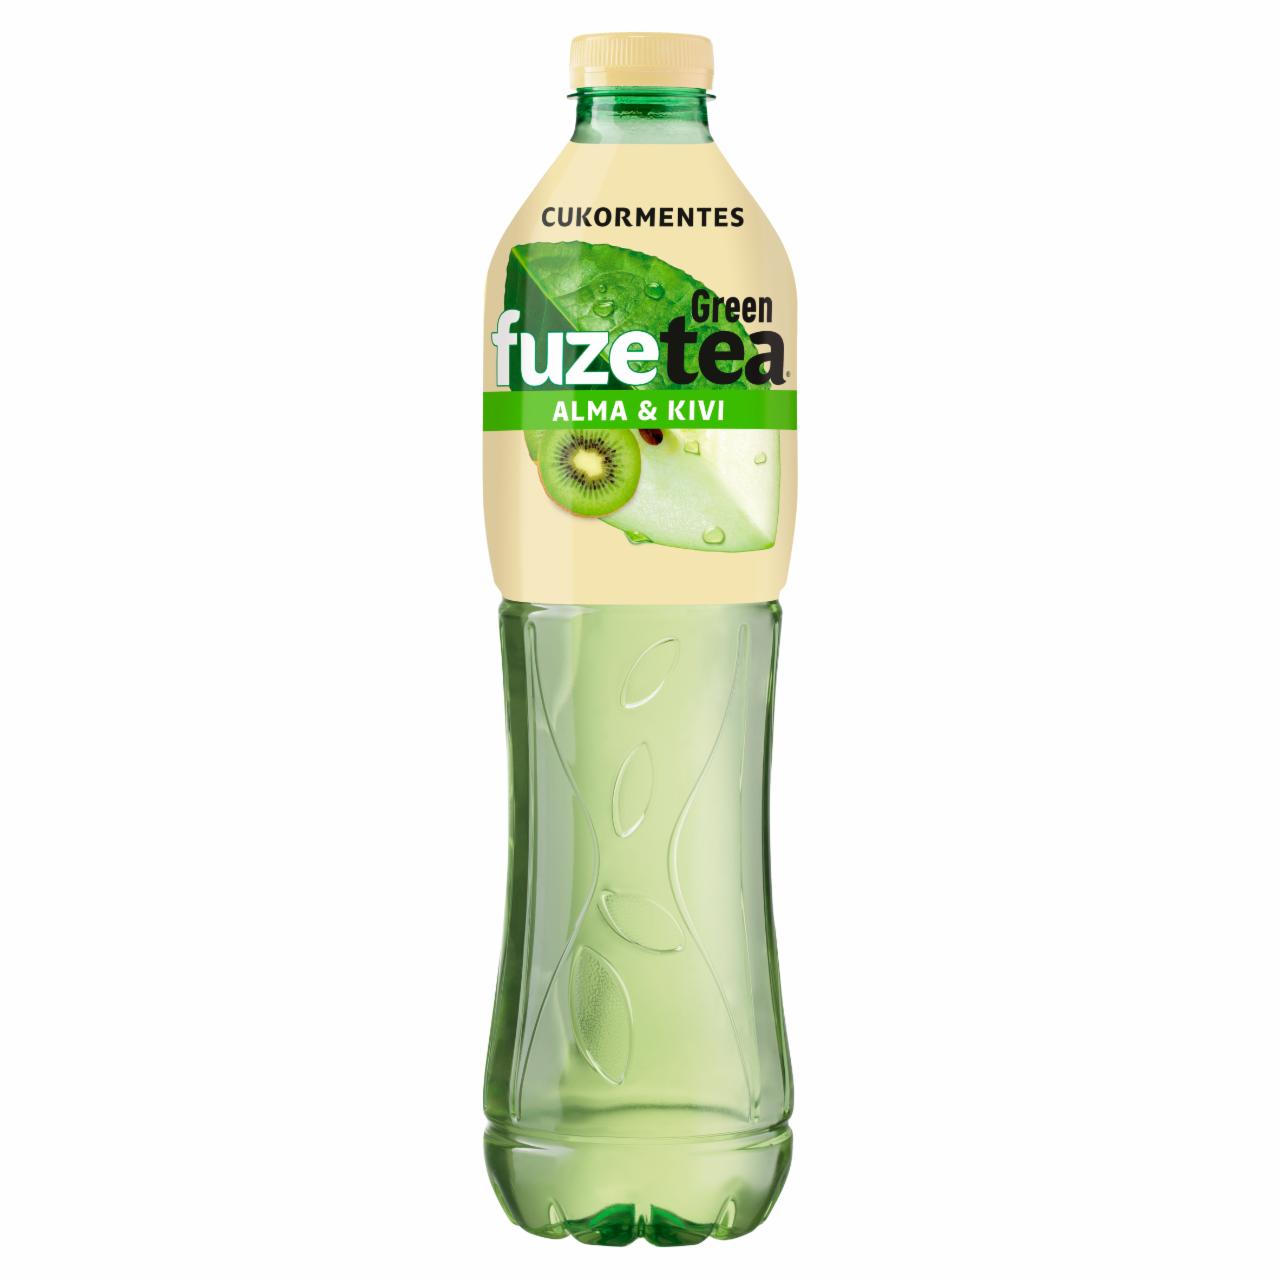 Képek - FUZETEA Zero energiamentes, szénsavmentes, alma és kivi ízű üdítőital zöld tea kivonattal 1,5 l